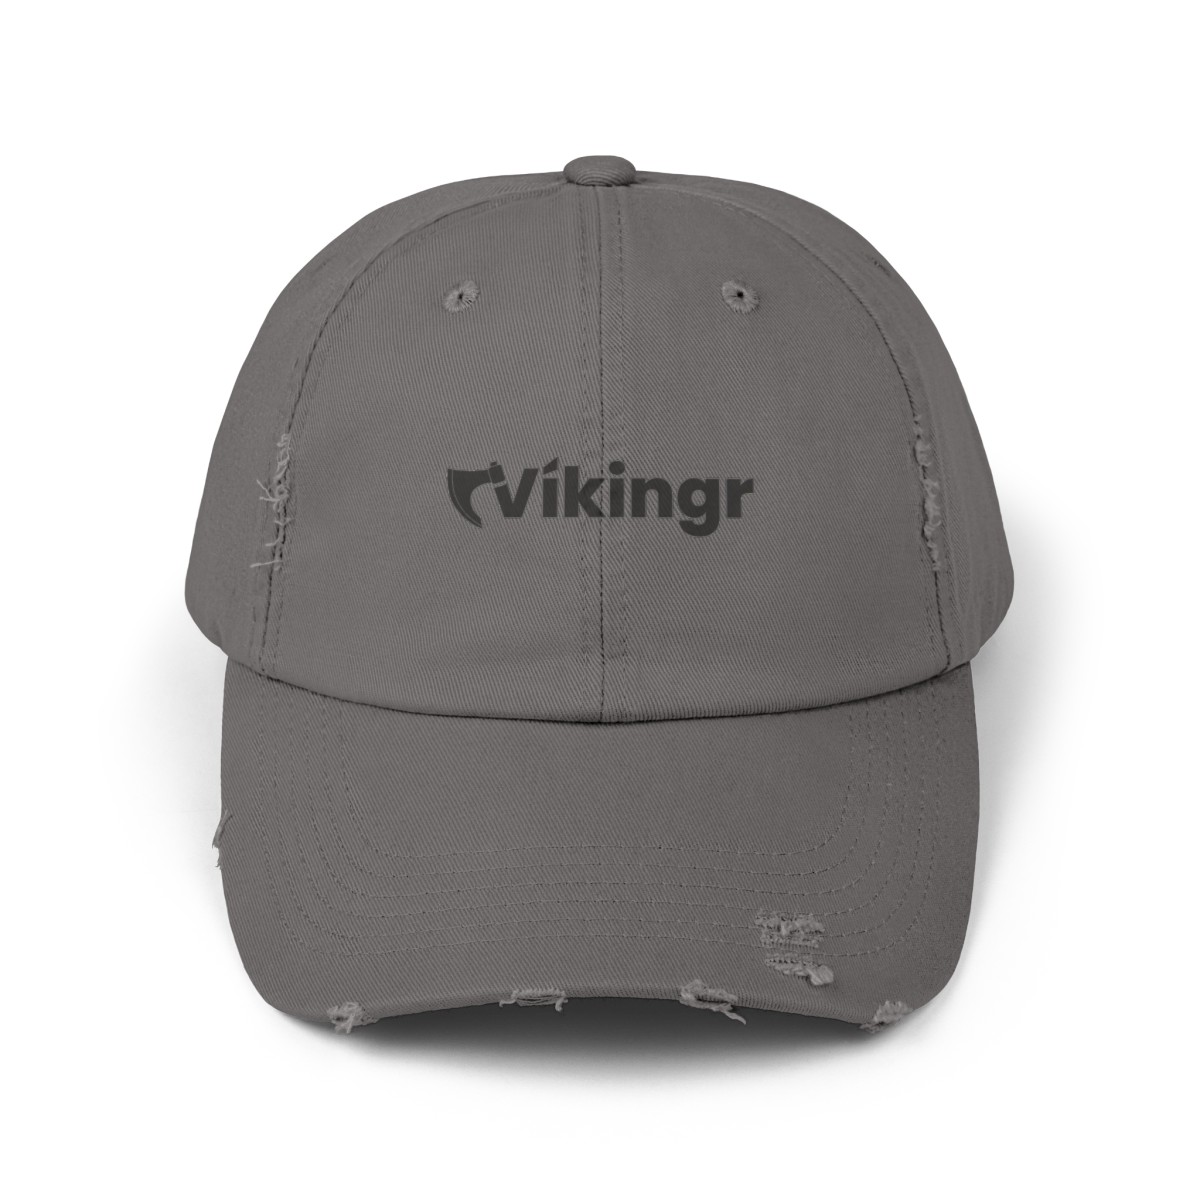 “Vikingr Cap” – Unisex Distressed/Vintage Cap